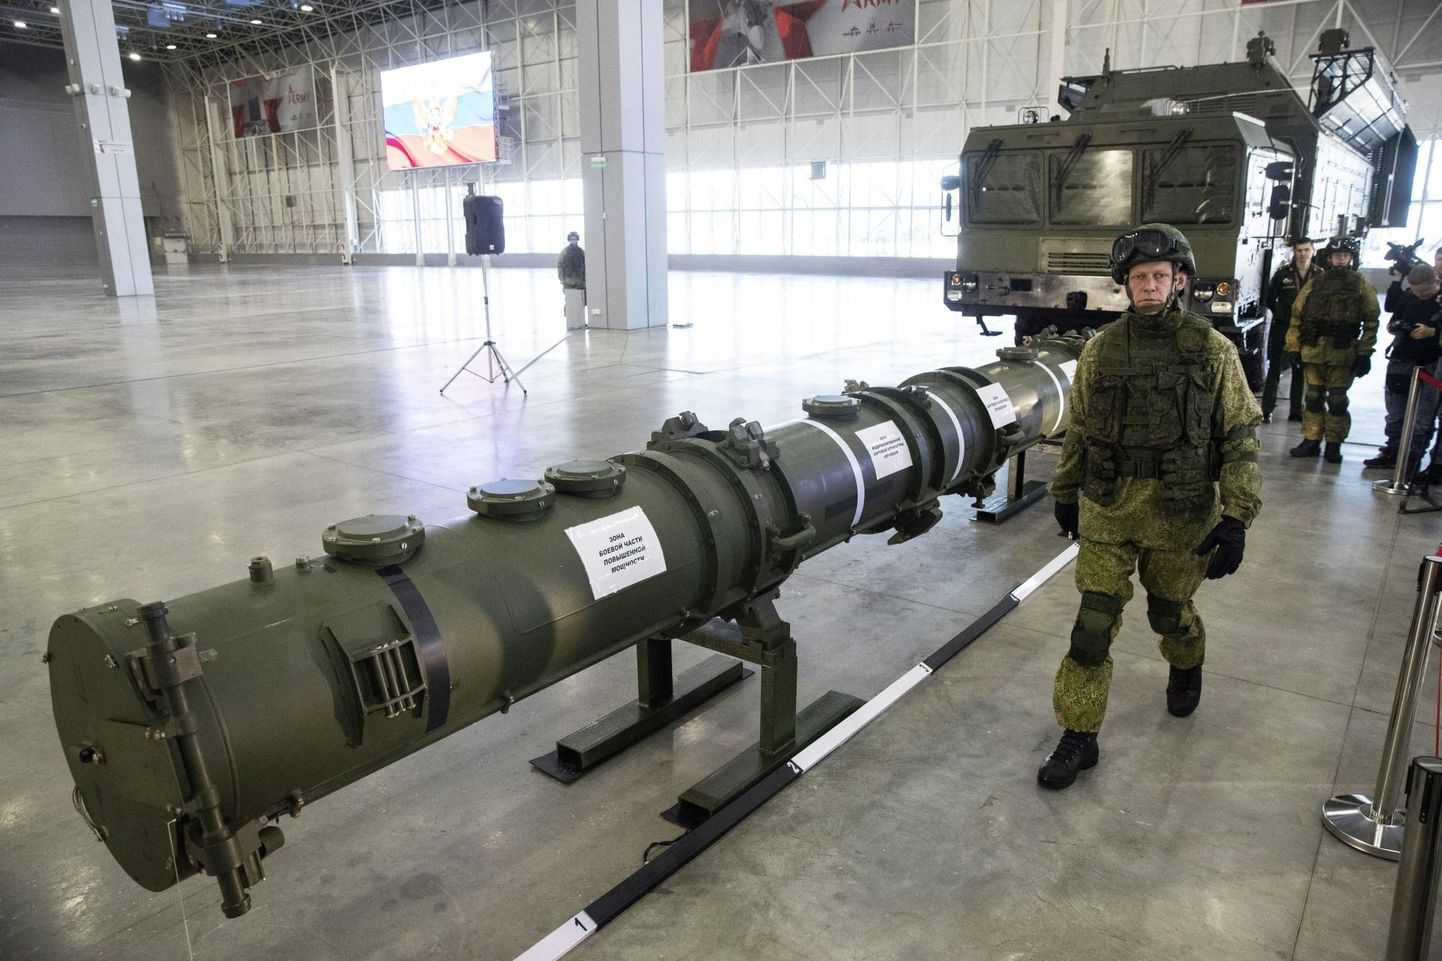 Venemaa demonstreerimas oma SSC-8 (9M729) tiibraketti tänavu veebruaris. 